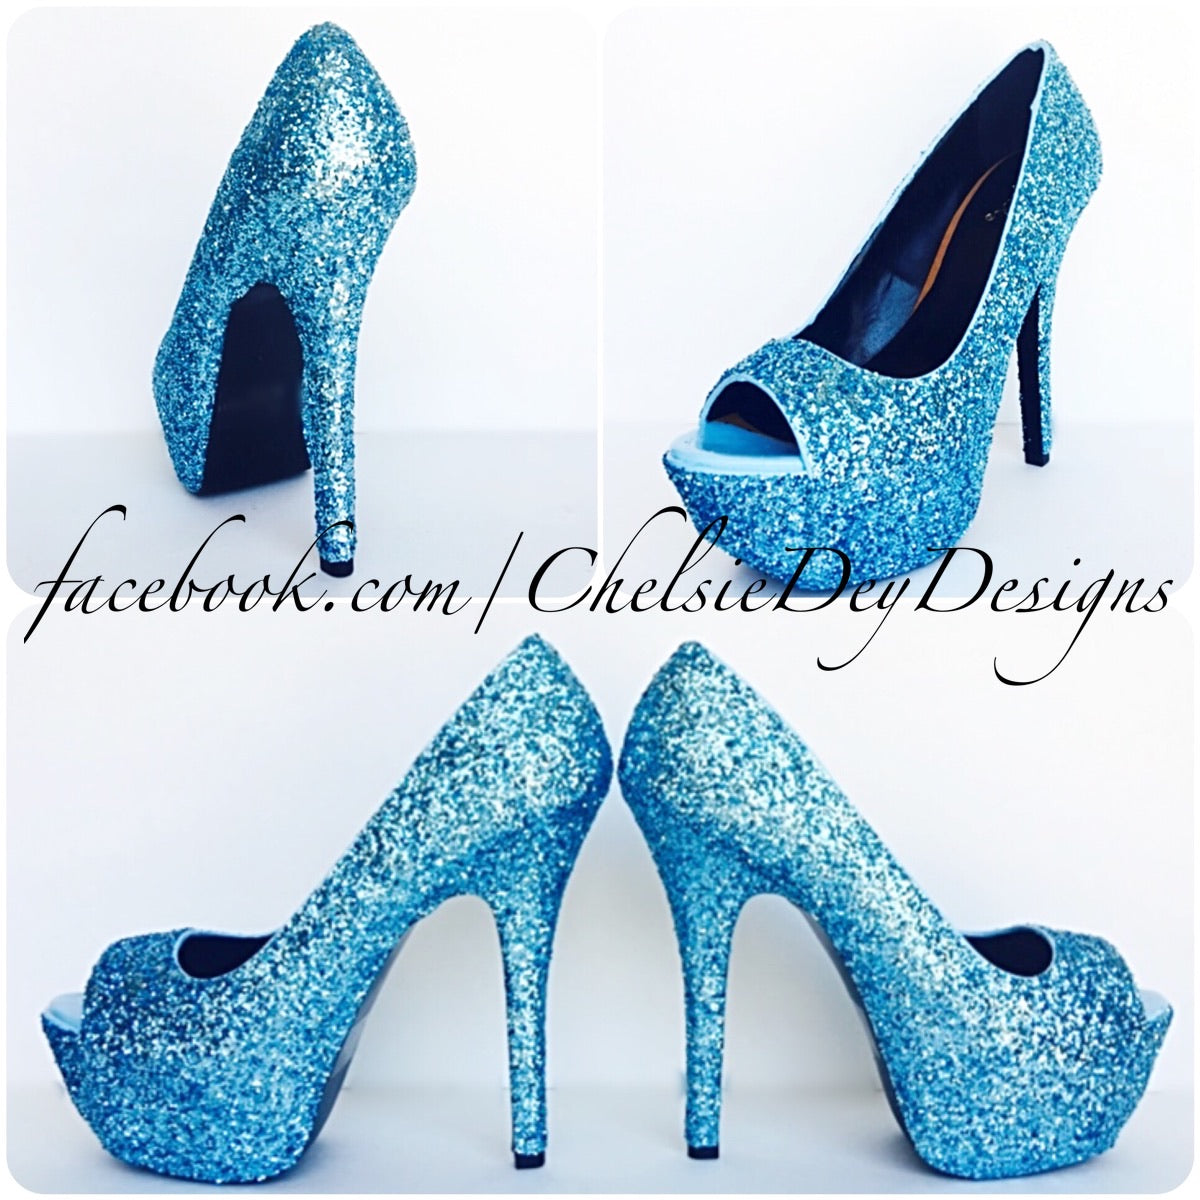 aqua blue high heels